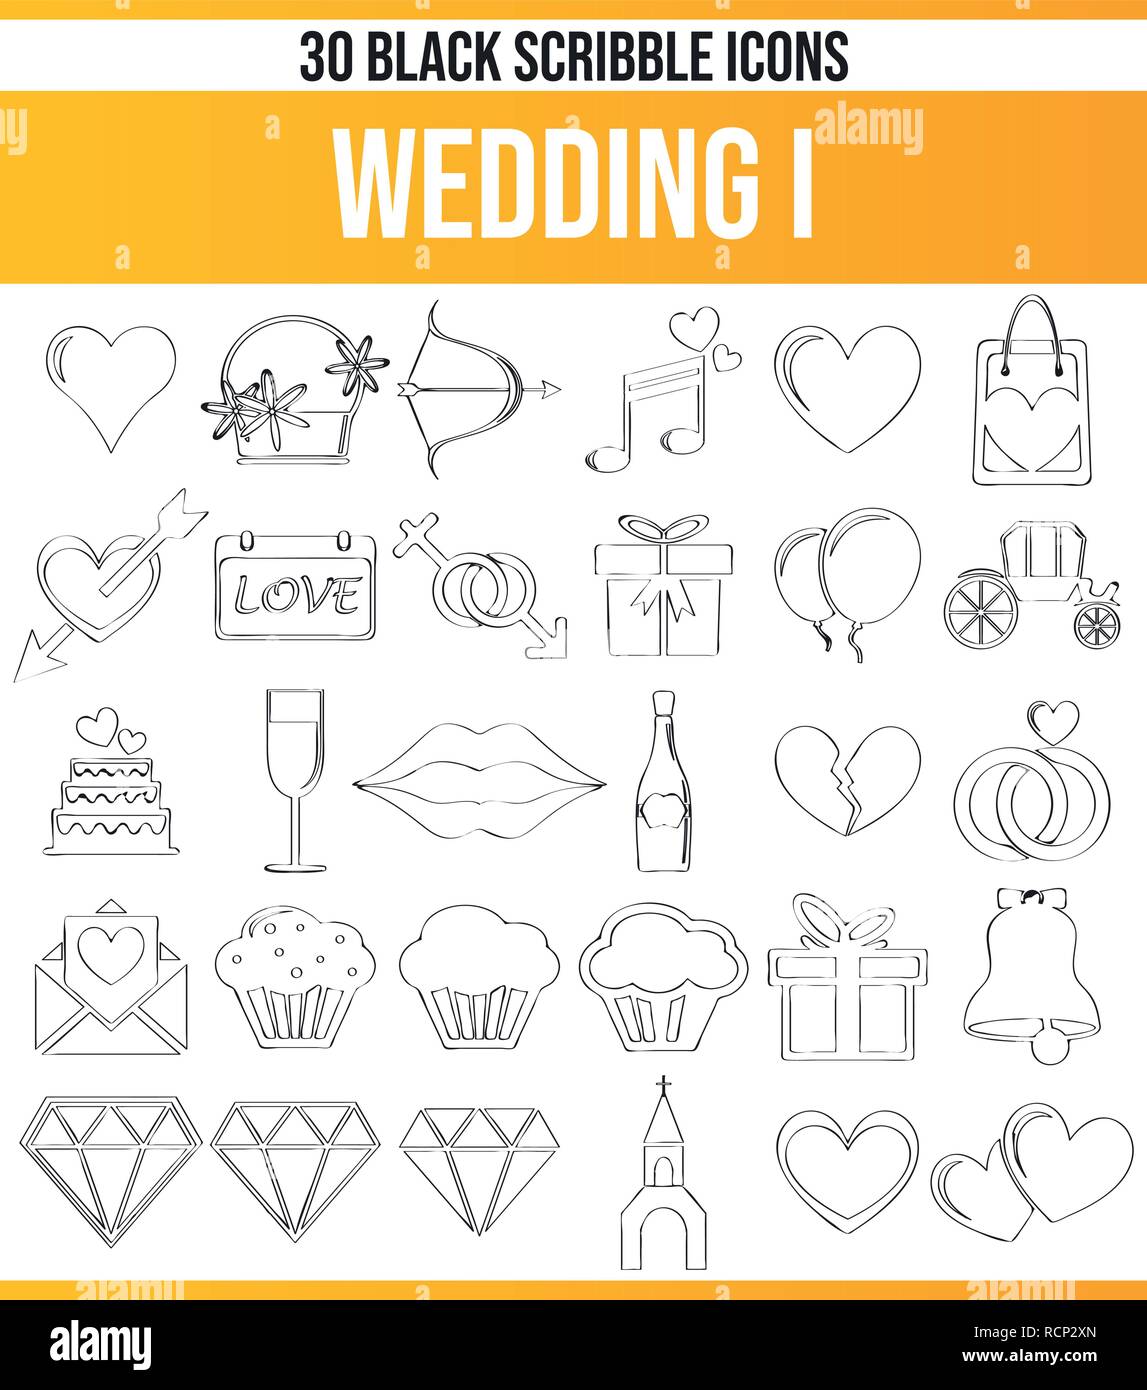 Schwarzen Symbole/Icons auf Hochzeit. Dieses Icon Set ist perfekt für kreative Menschen und Designer, die das Thema der Liebe in ihrer grafischen Designs benötigen. Stock Vektor